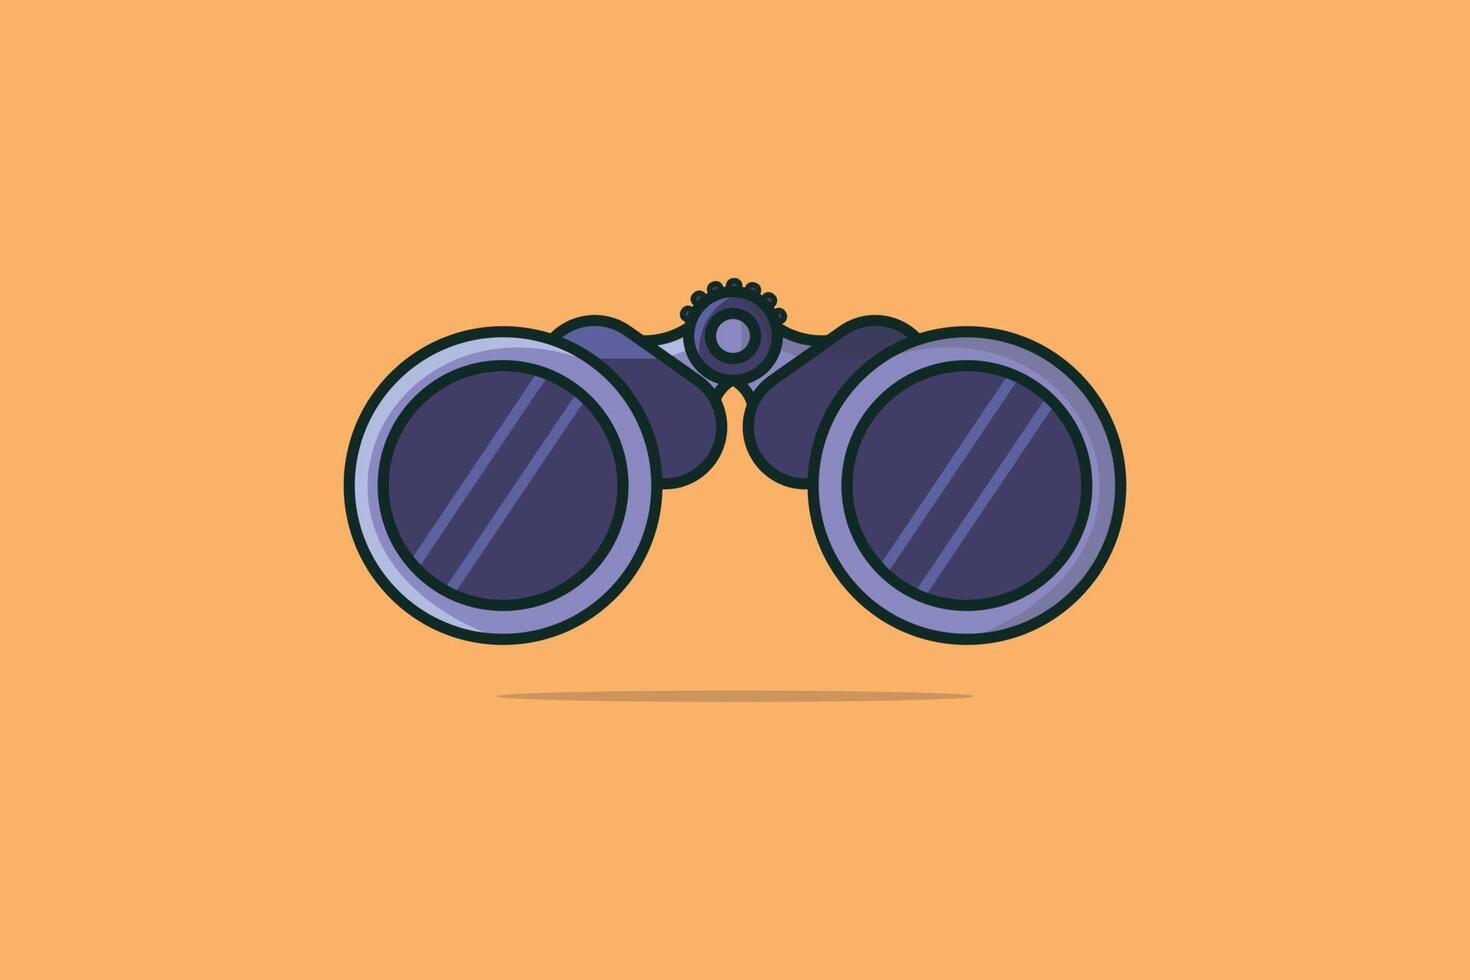 Ilustración de vector de instrumento óptico binoculares. concepto de icono de objeto explorador binocular. binoculares con lentes de vidrio para ver el diseño de vectores de objetos distantes con sombra sobre fondo naranja claro.